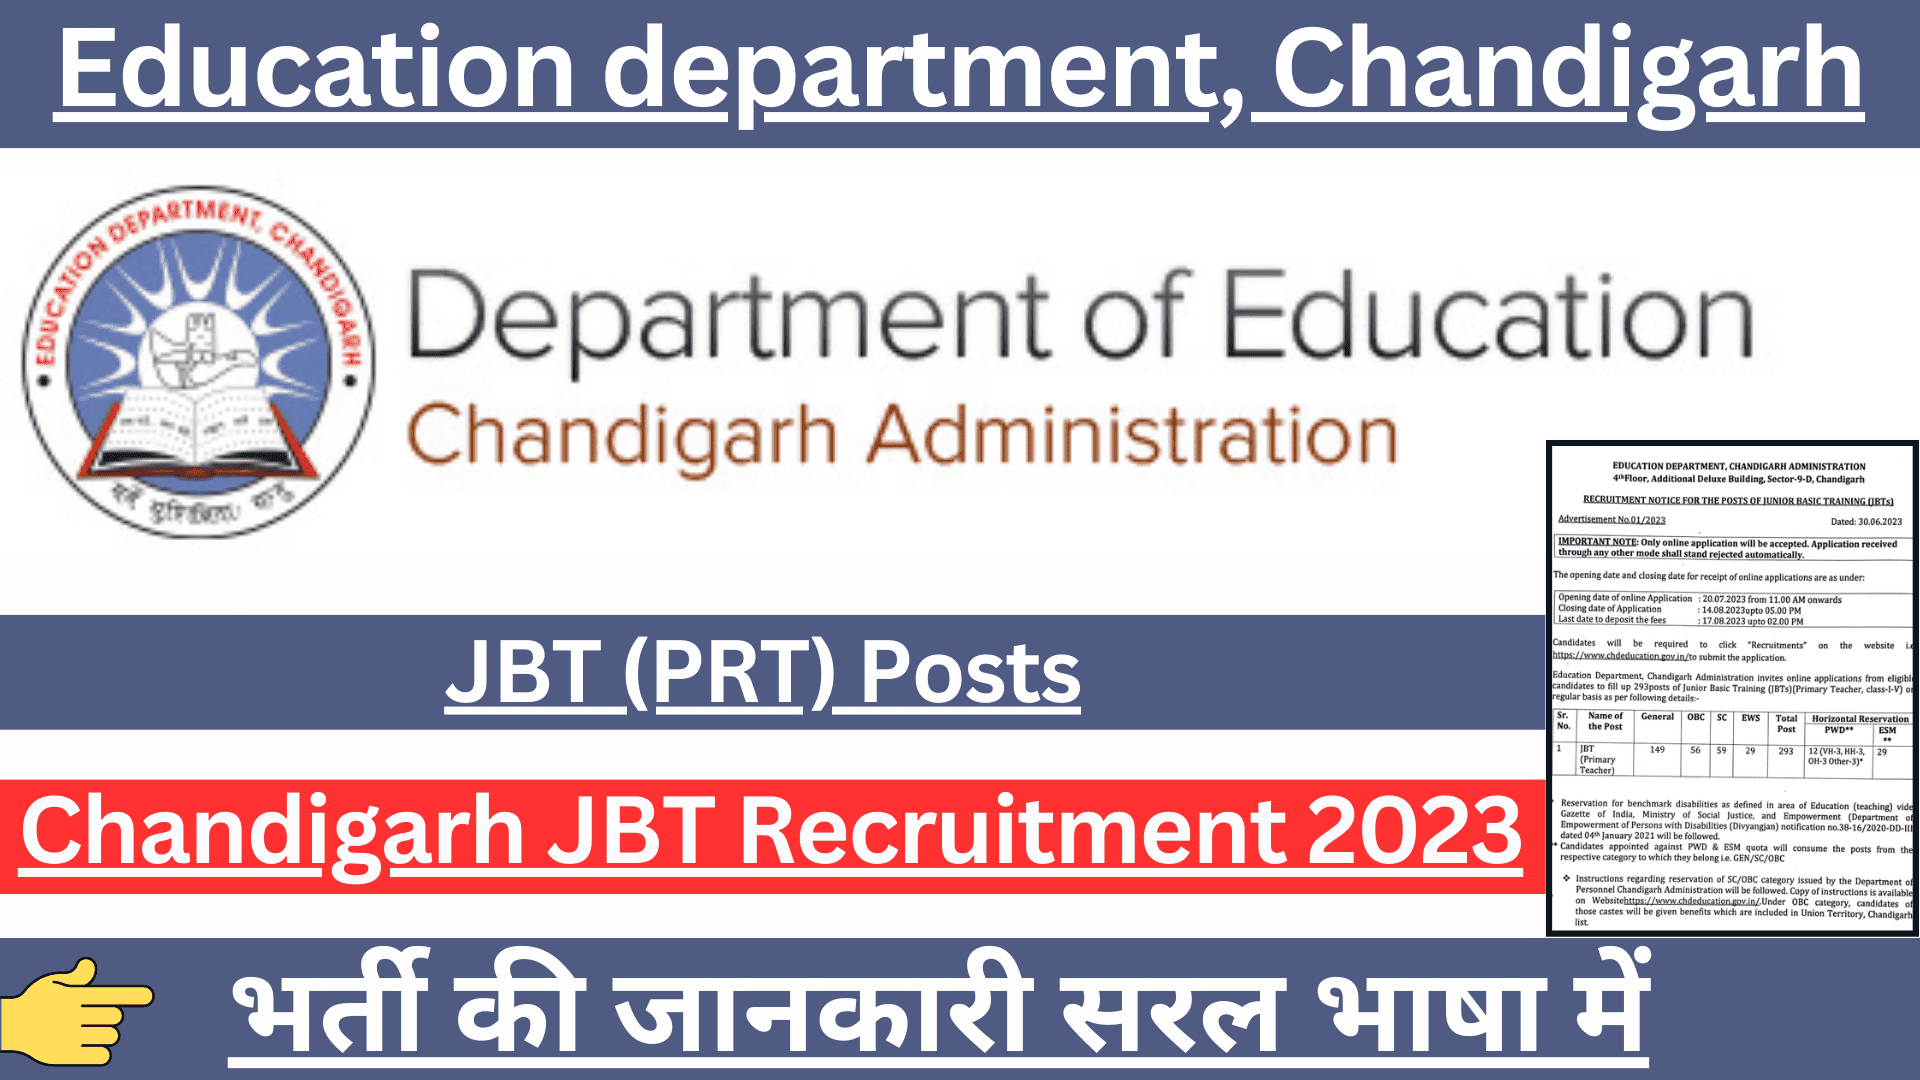 Chandigarh JBT Recruitment 2023